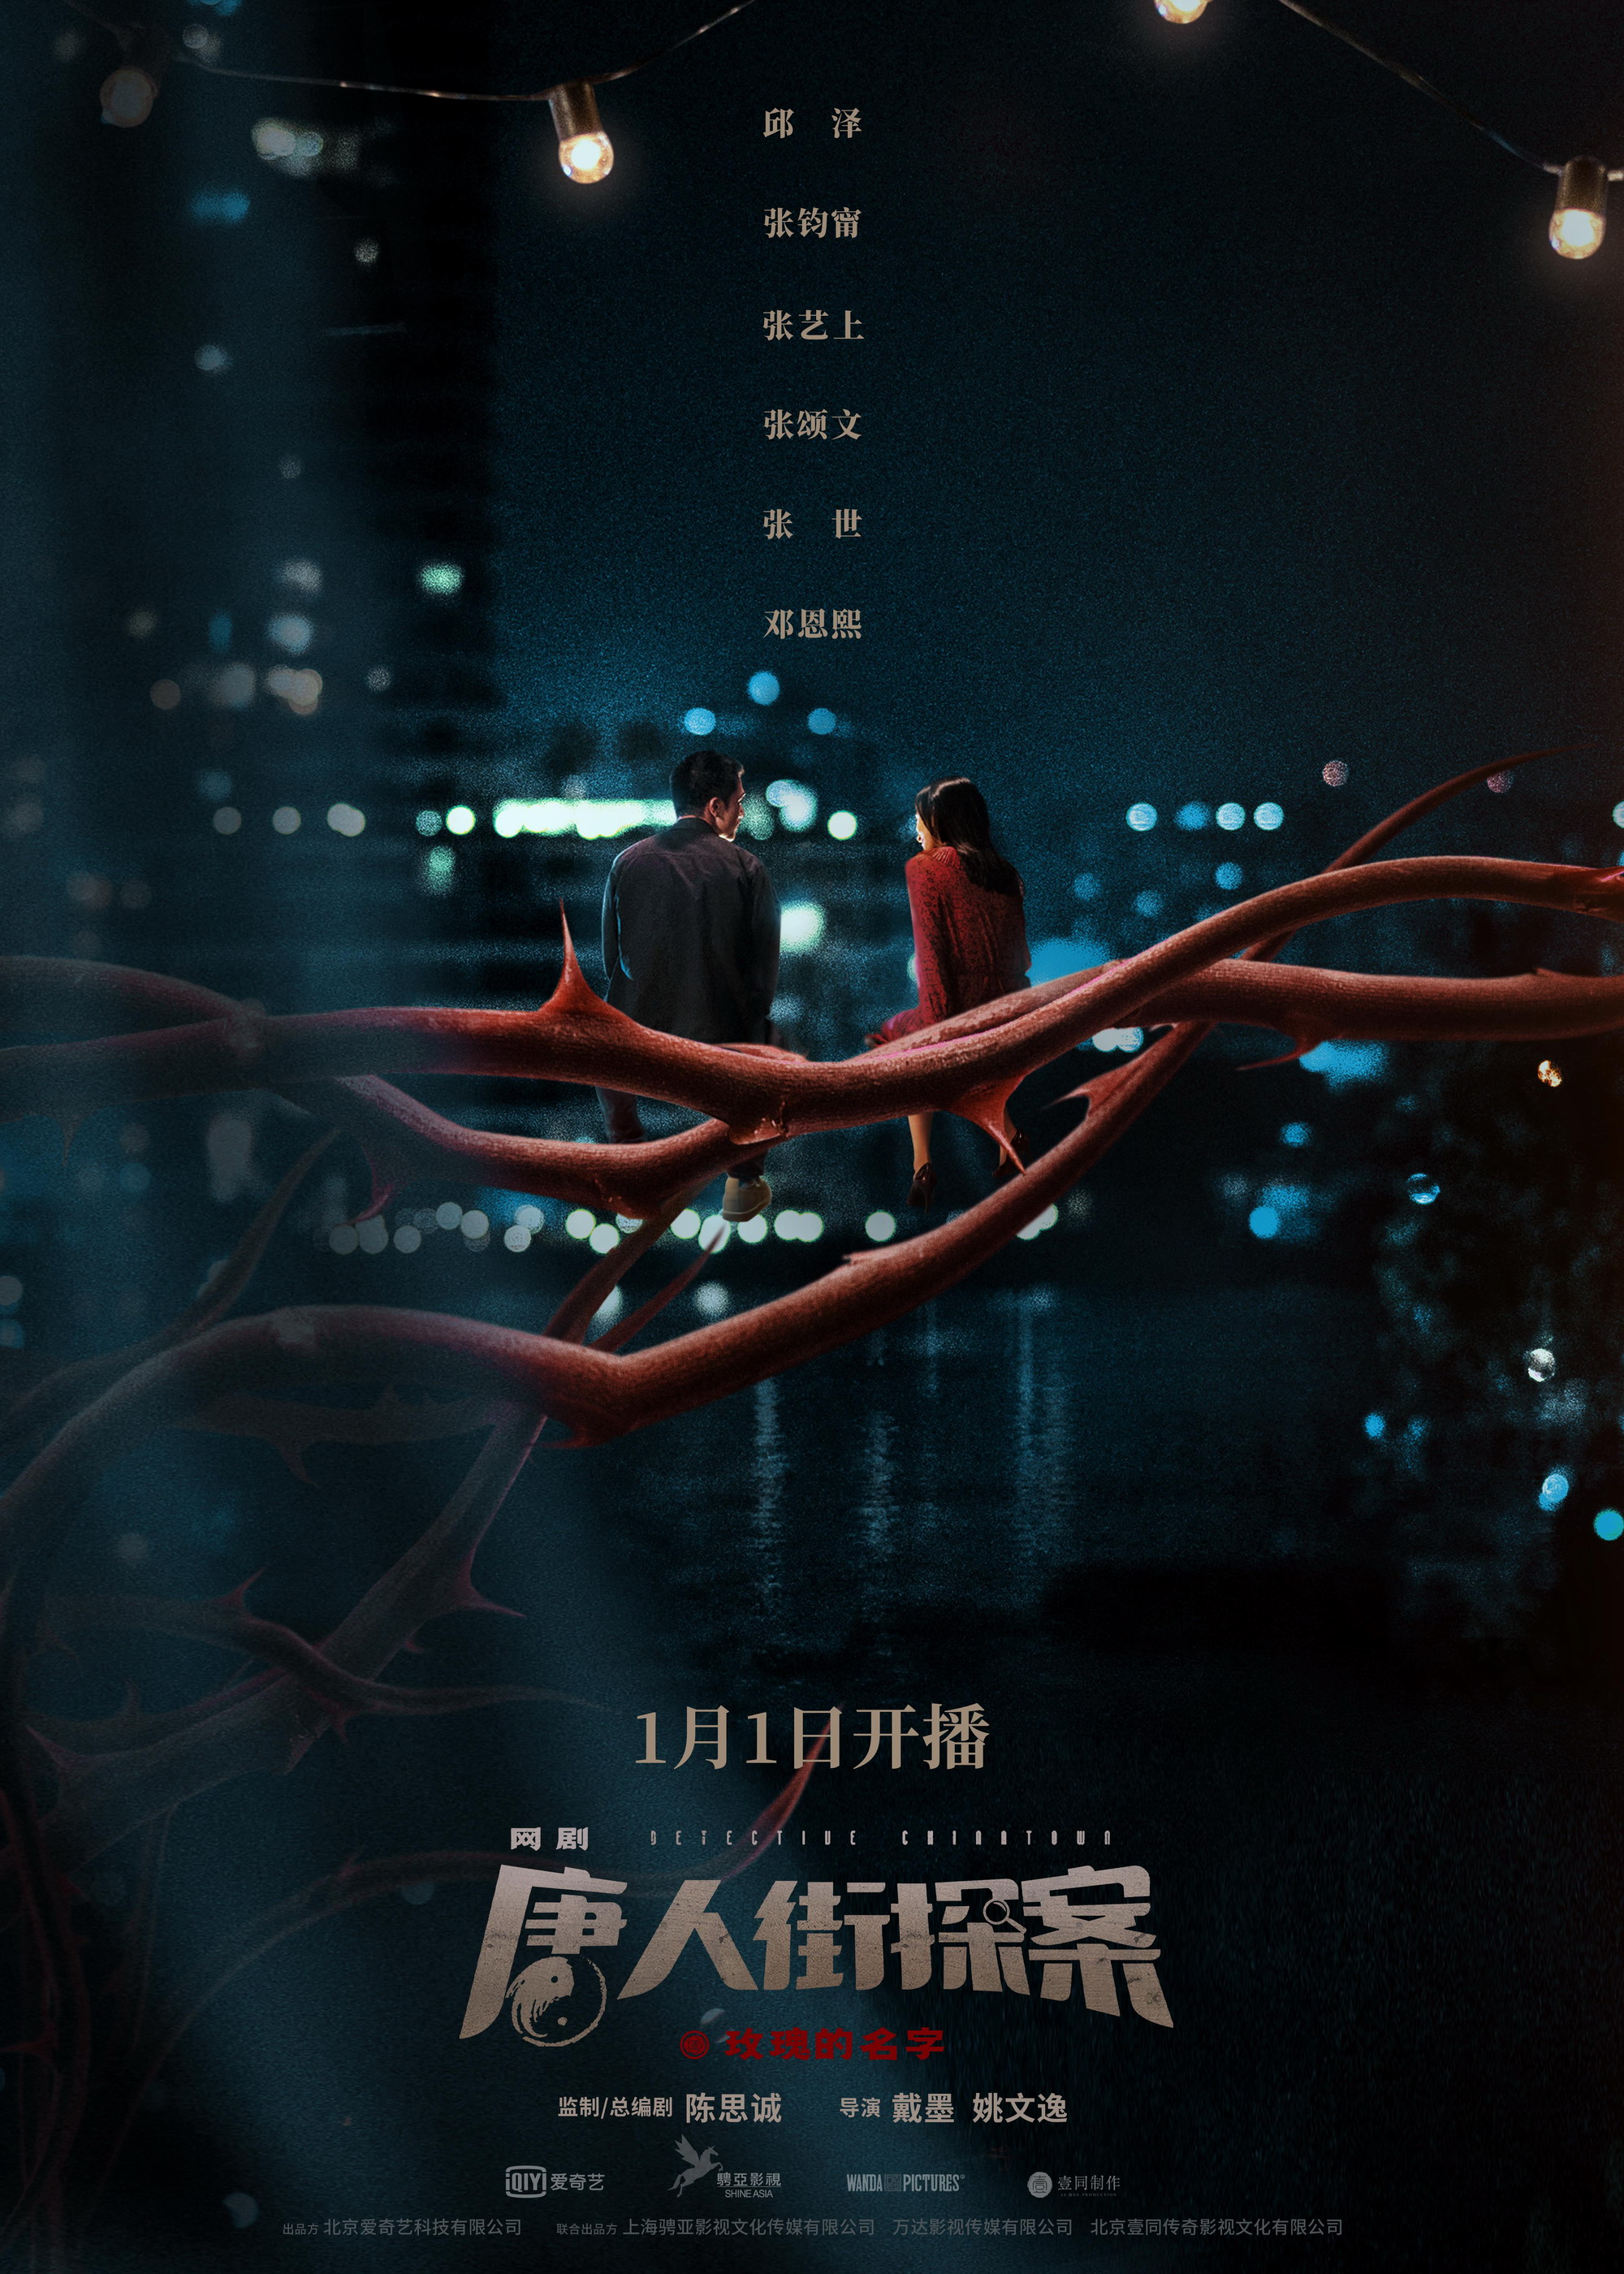 网剧《唐人街探案》定档 2020年1月1日开播